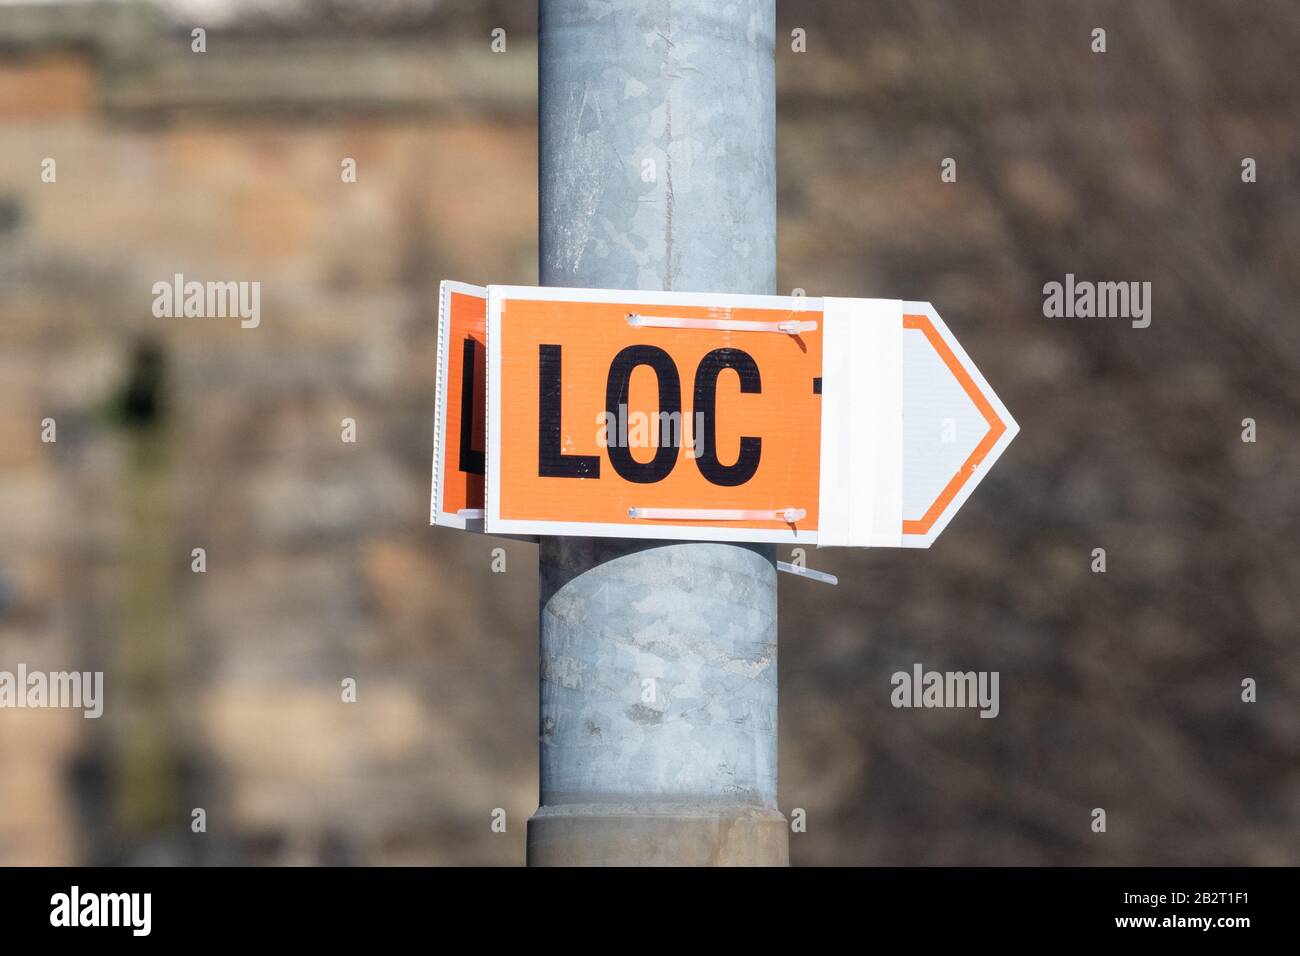 Segno LOC, che indica la location delle riprese - Scozia, Regno Unito Foto Stock